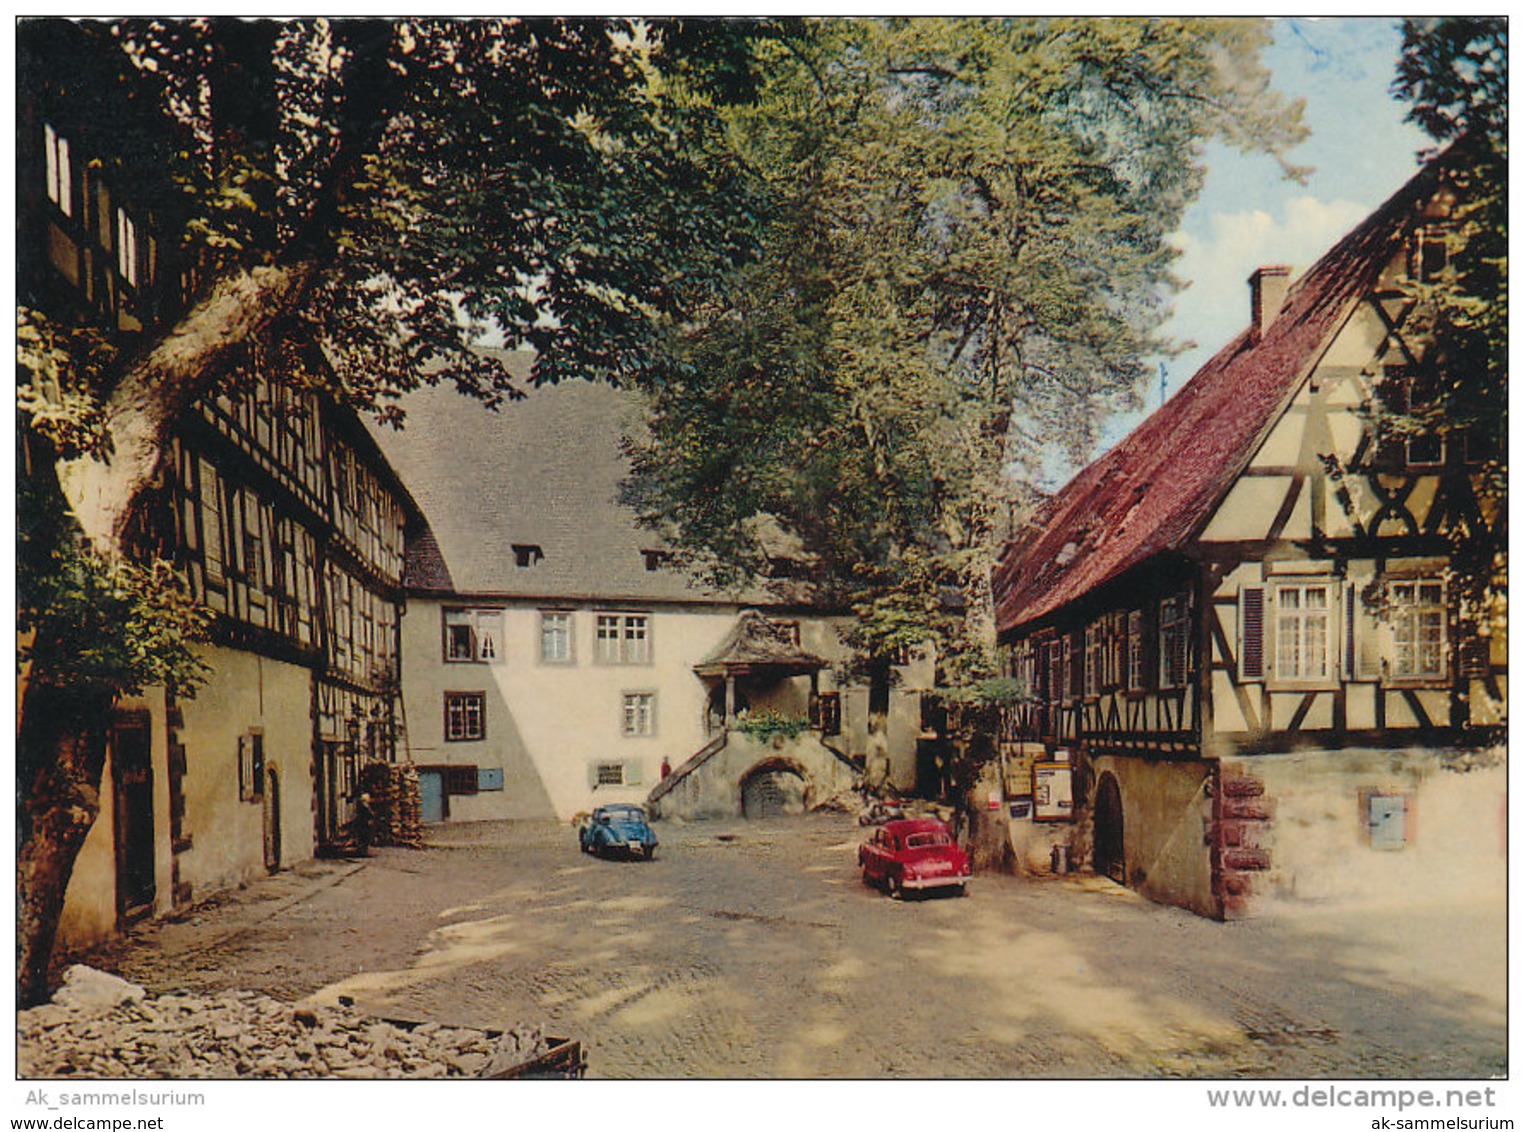 Michelstadt (D-A192) - Michelstadt